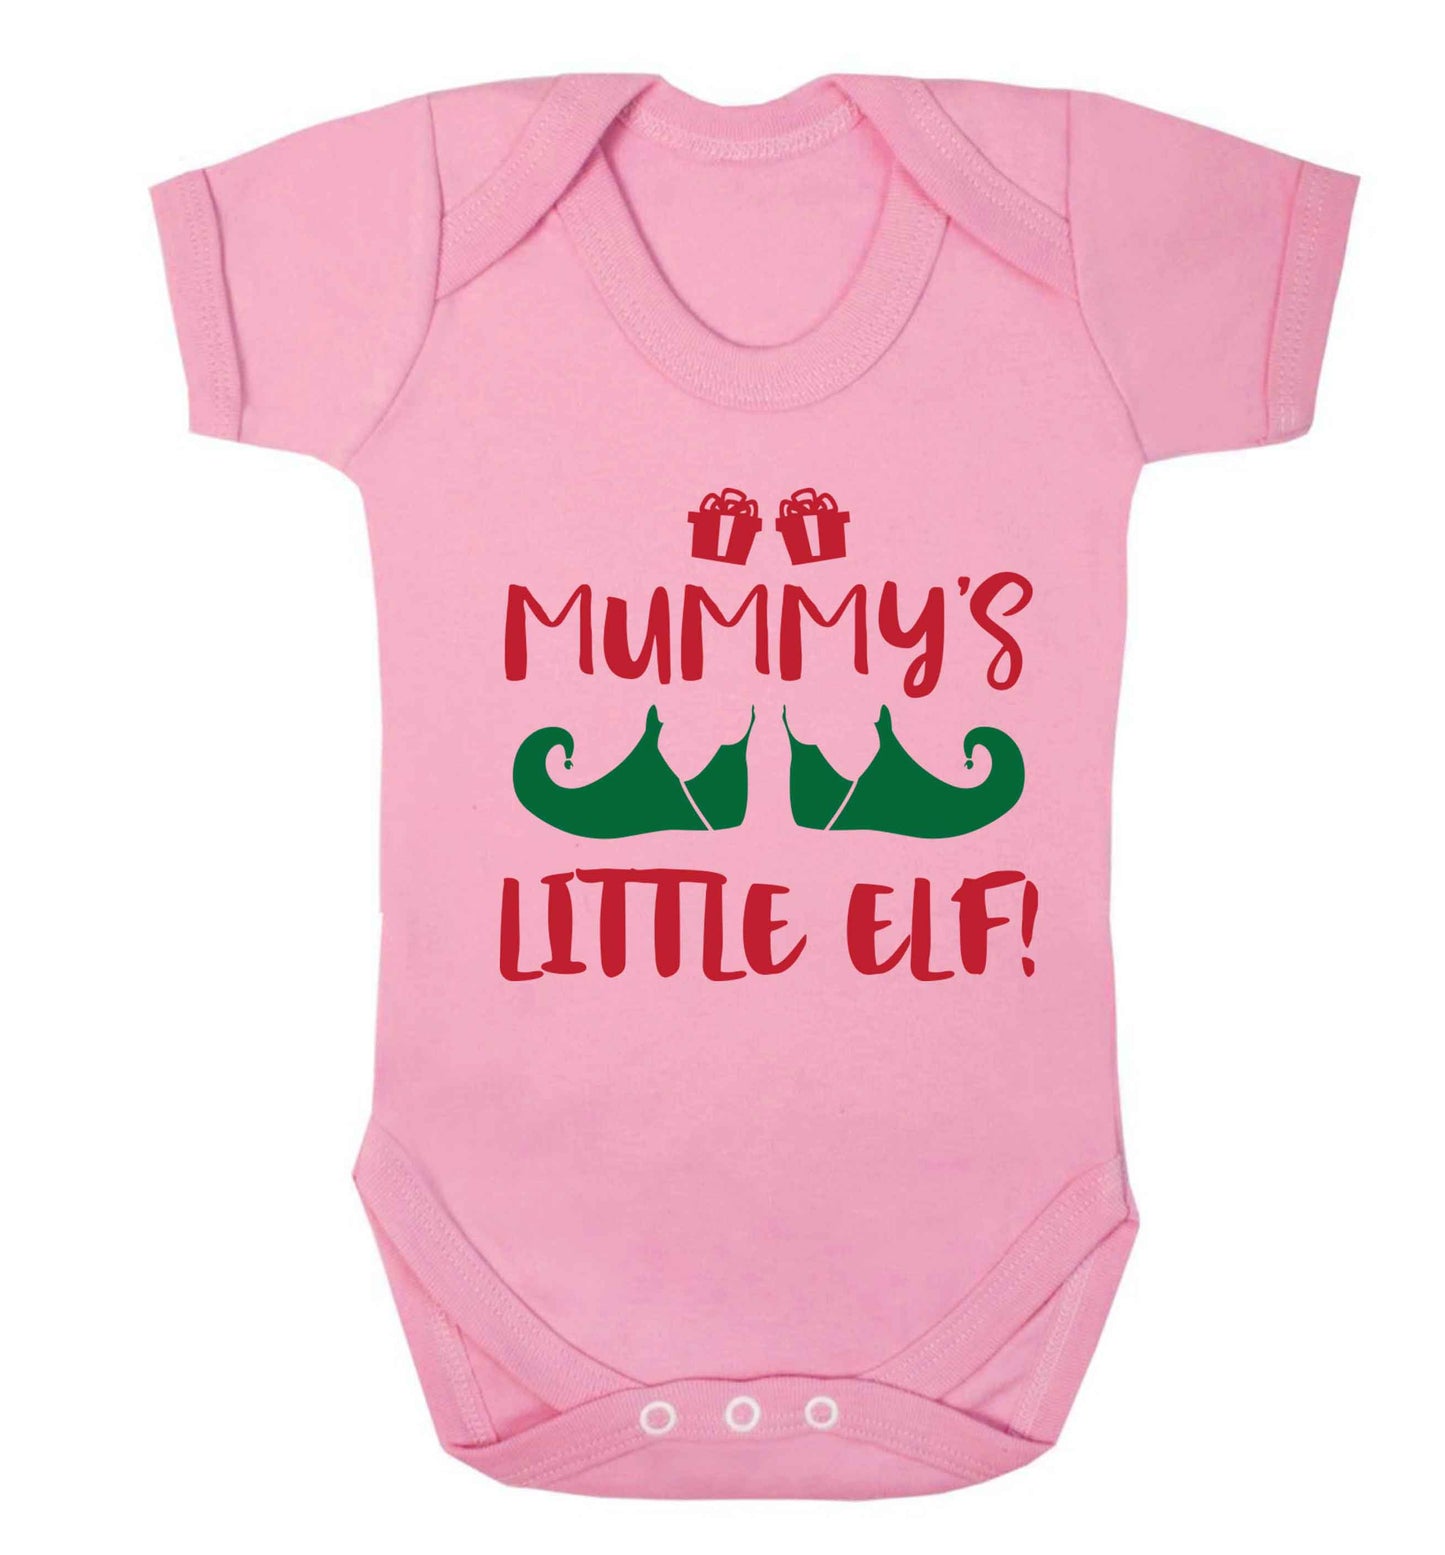 Mummy's little elf Baby Vest pale pink 18-24 months